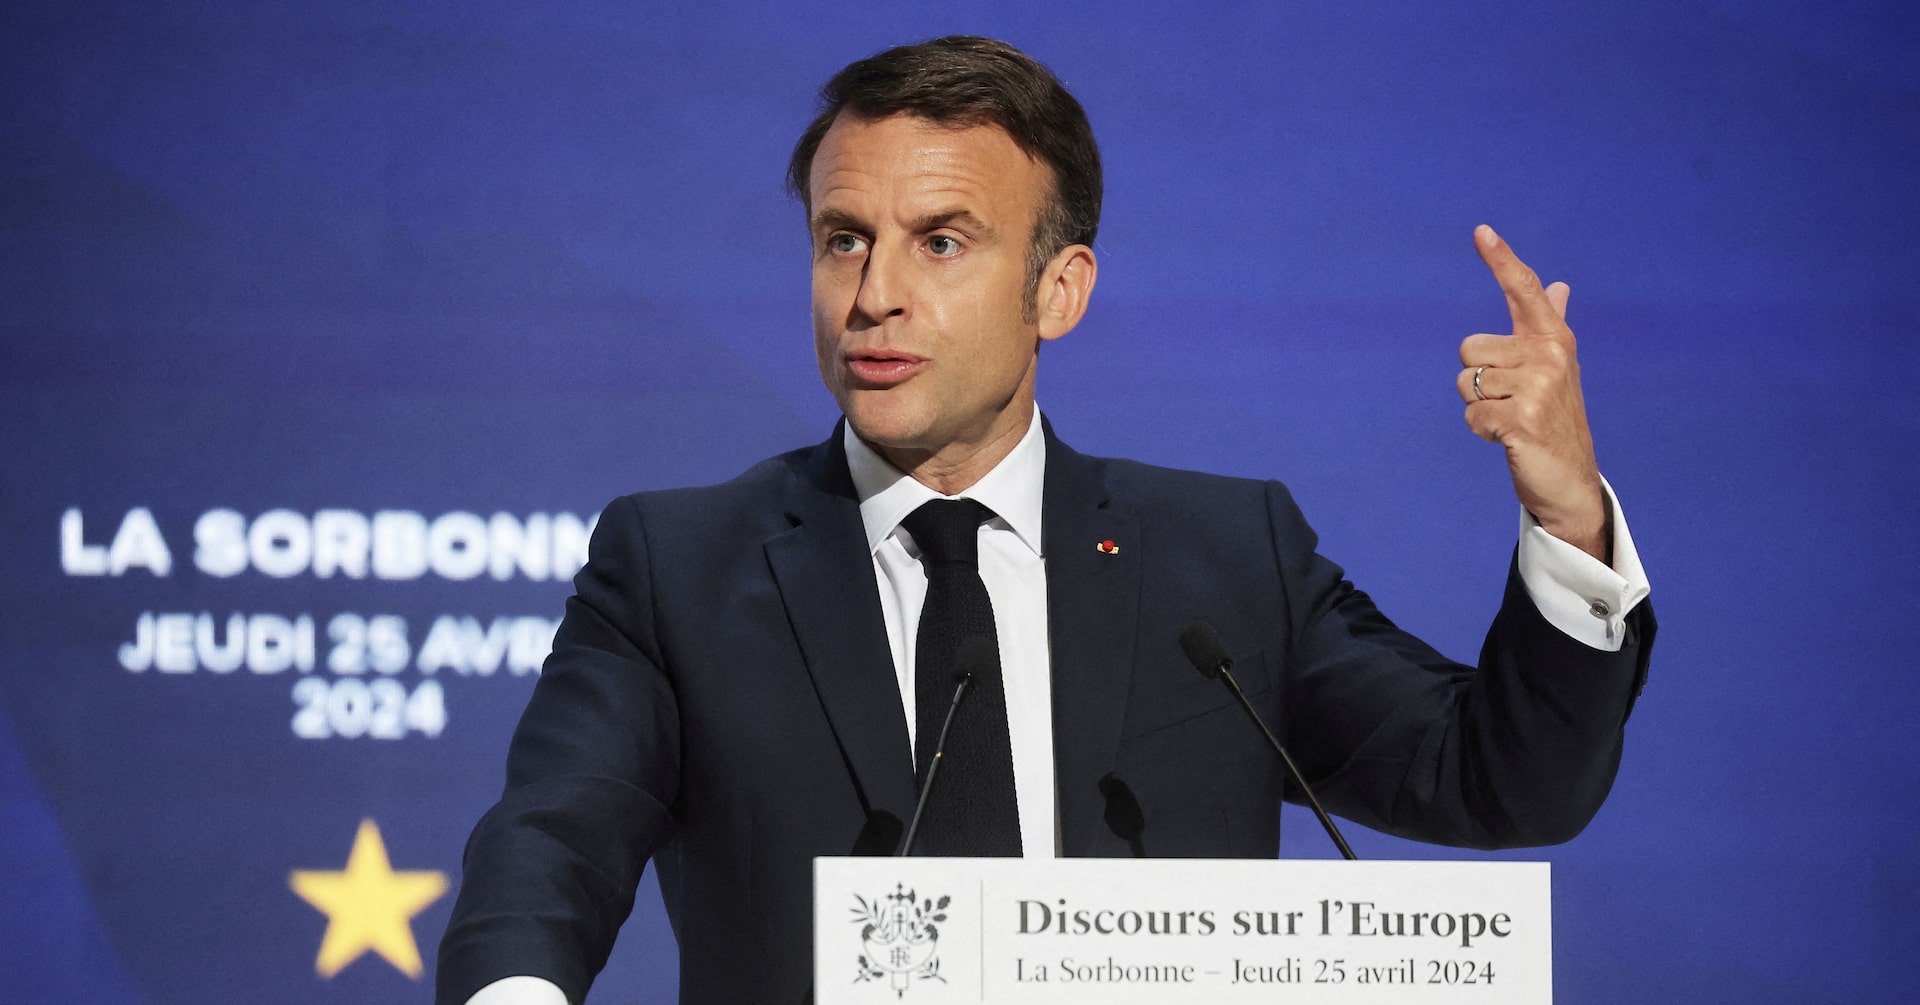 仏大統領、欧州防衛の強化求める 「滅亡のリスク」